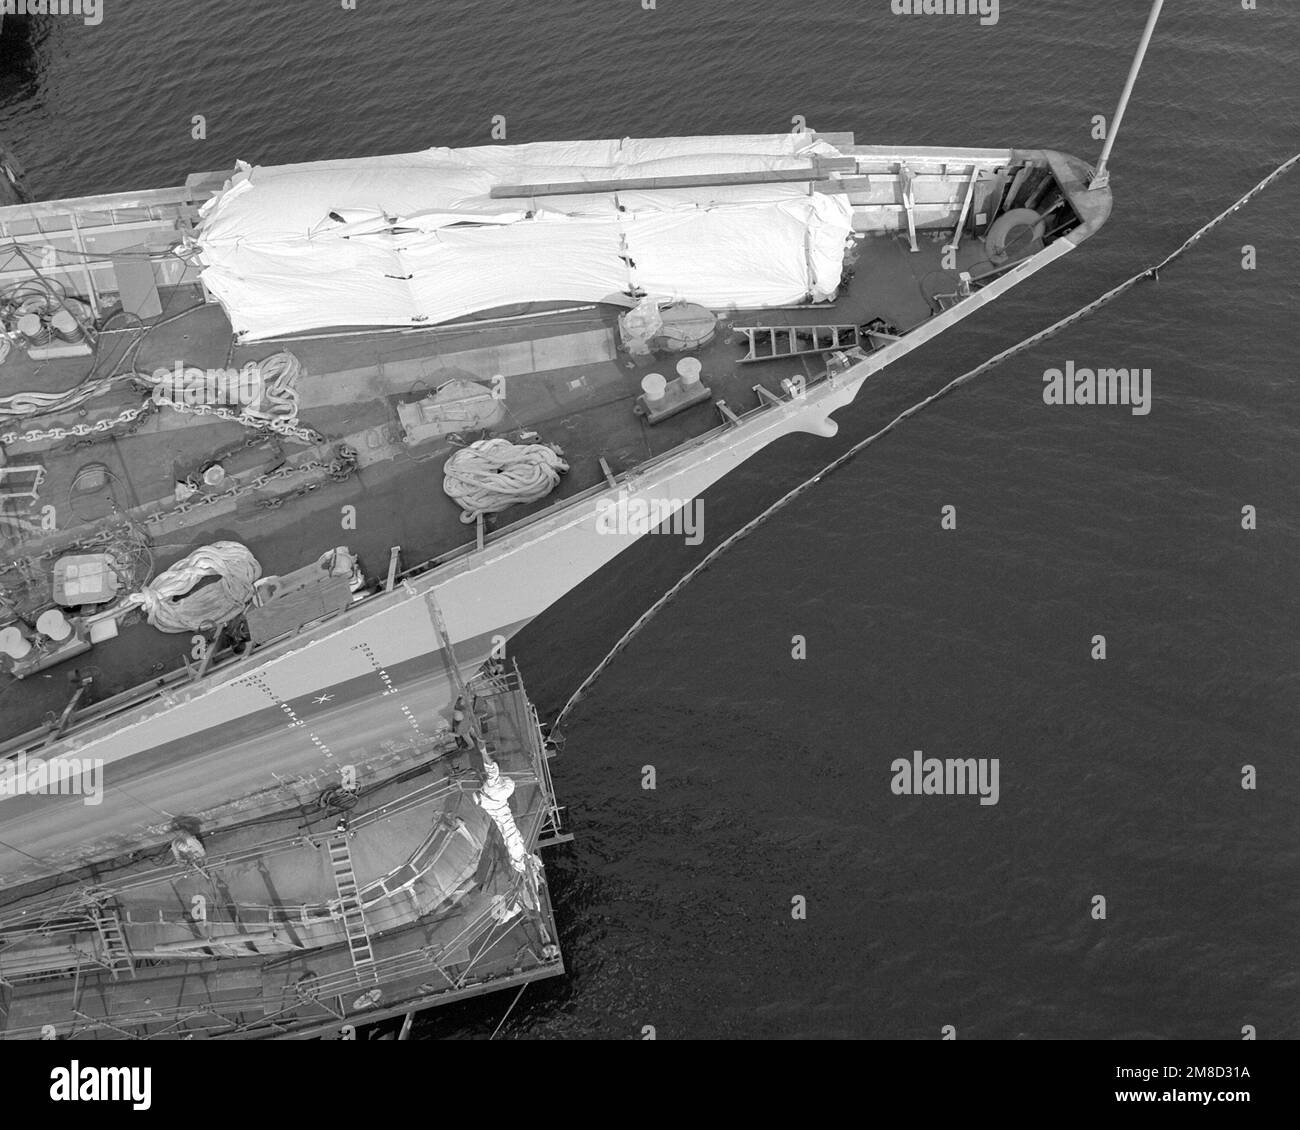 Una vista de la proa del crucero de misiles guiado GETTYSBURG (CG-64) durante la construcción. El barco está 70 por ciento completo. Base: Bath Estado: Maine (ME) País: United States of America (USA) Foto de stock